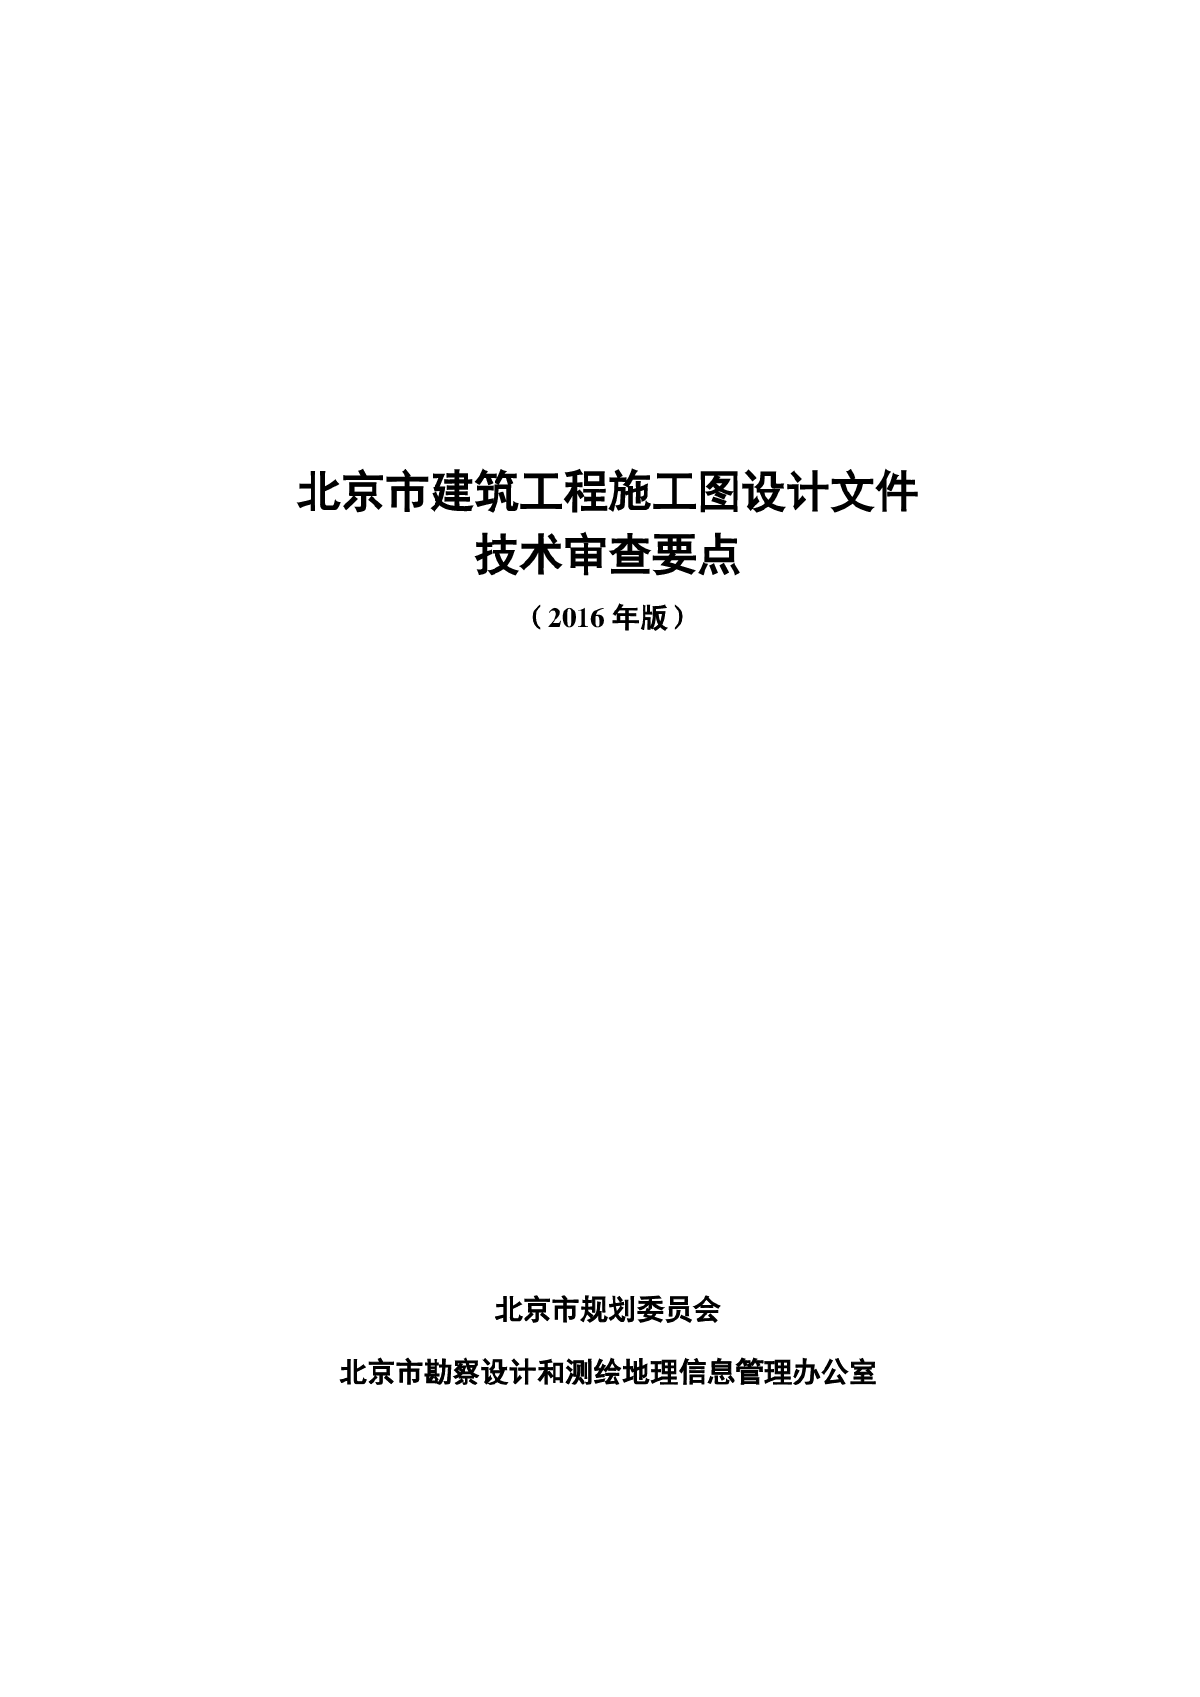 《北京市建筑工程施工图设计文件技术审查要点（2016年版）》